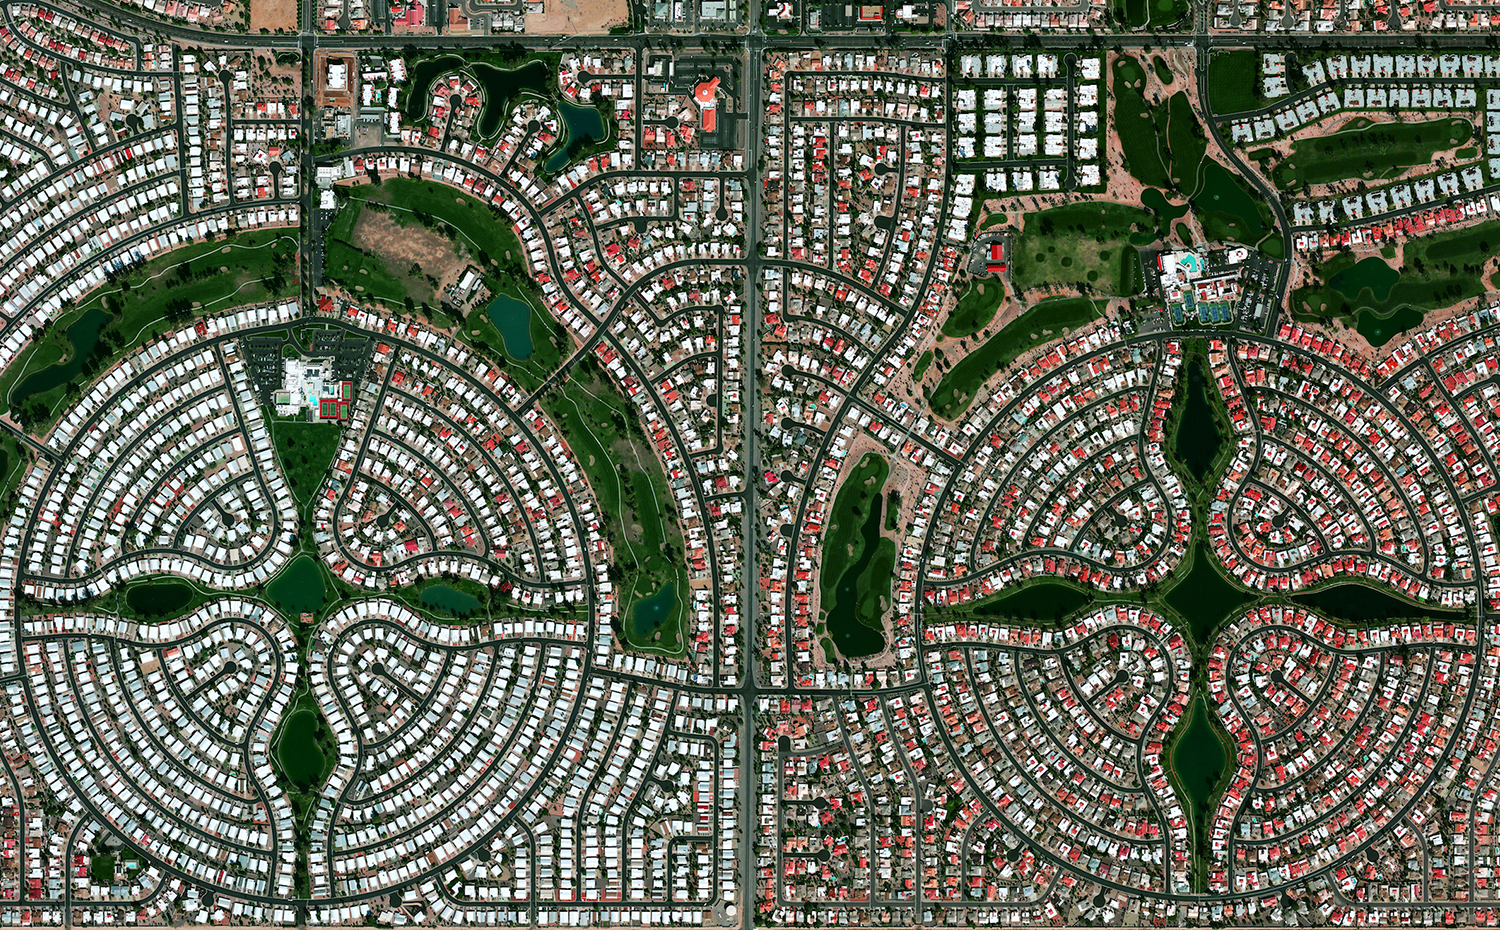 03. Sun Lakes, Arizona. Benjamin Grant / Satellite imagery